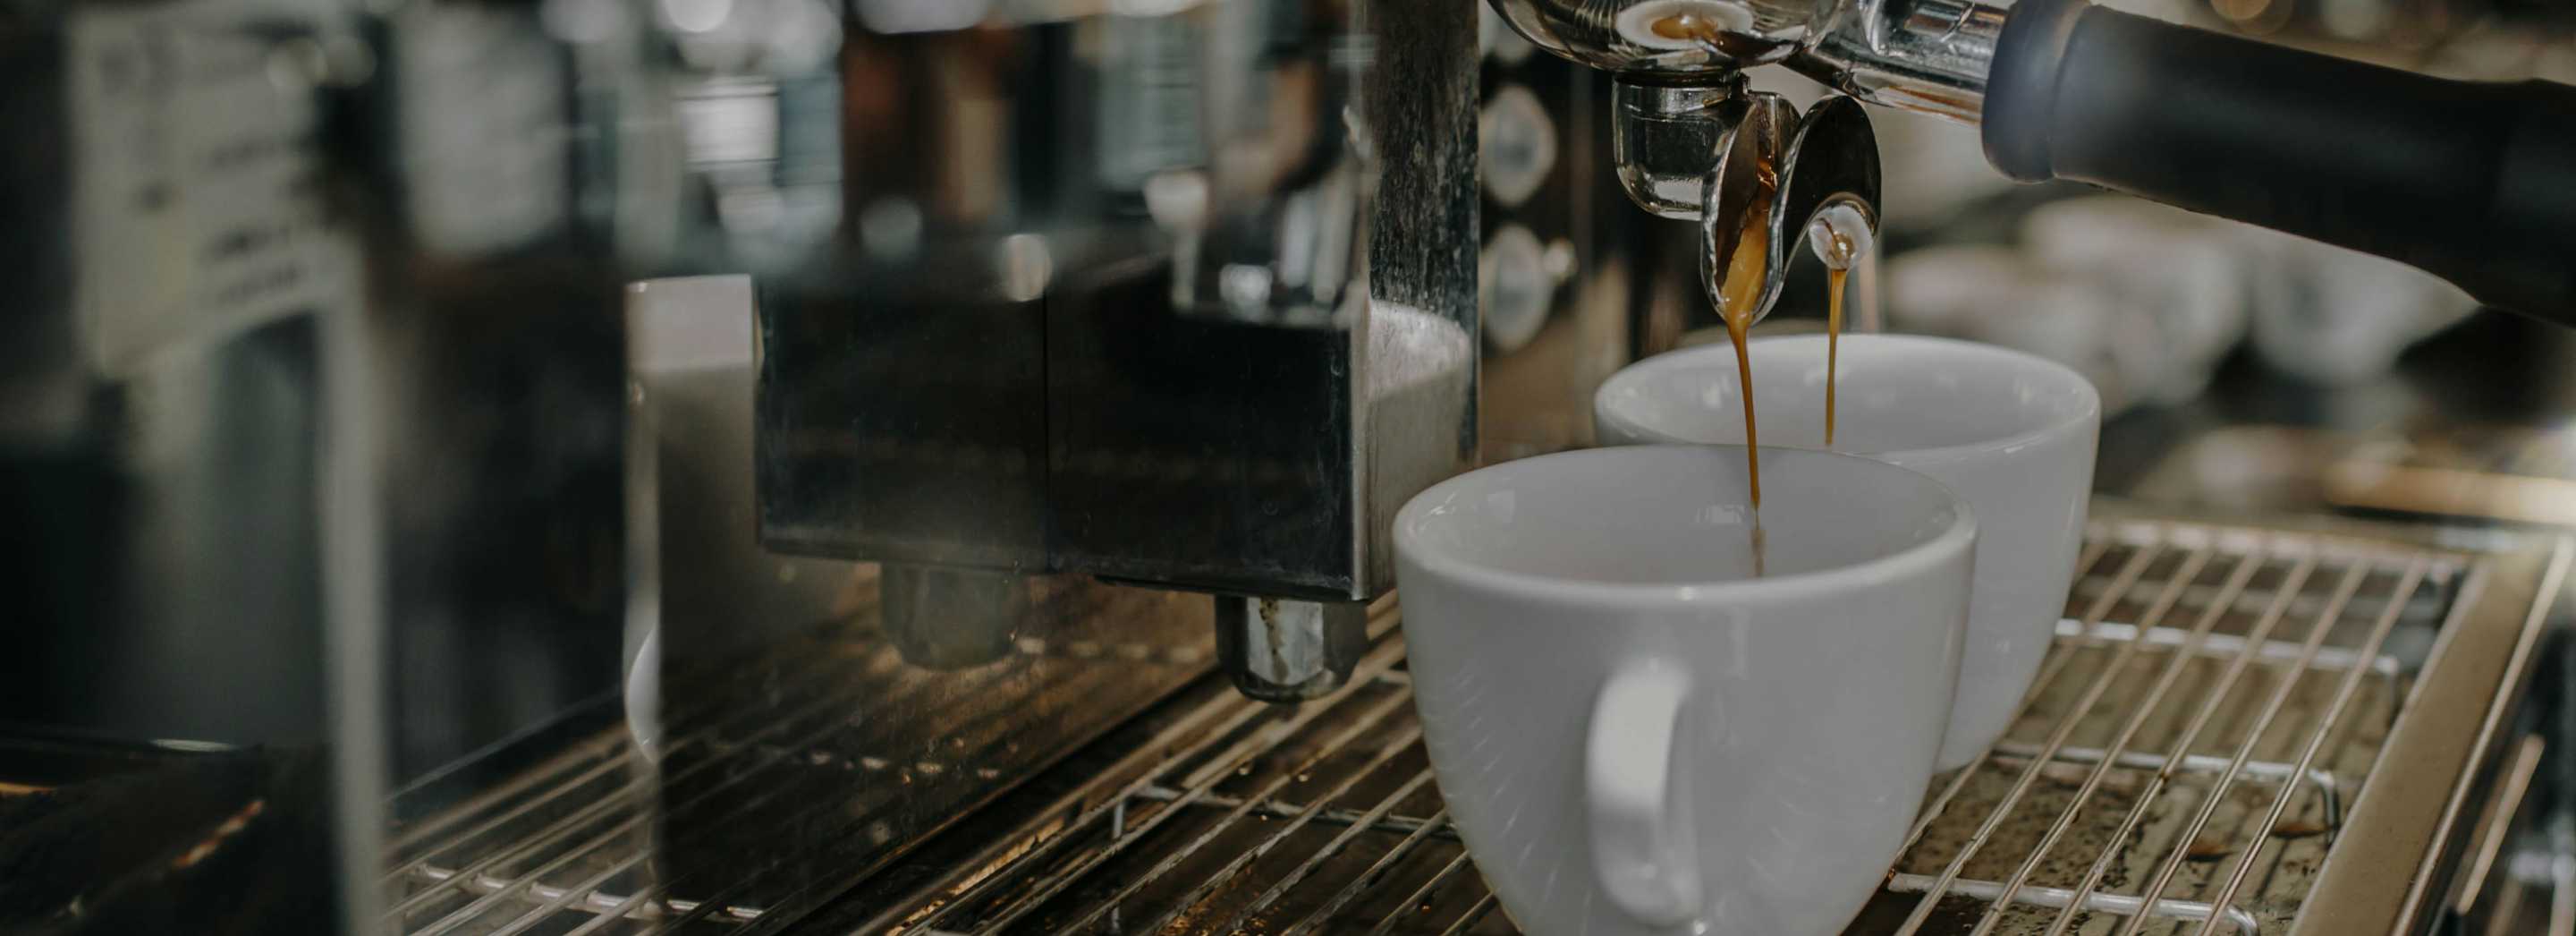 espresso pours into a white espresso cup